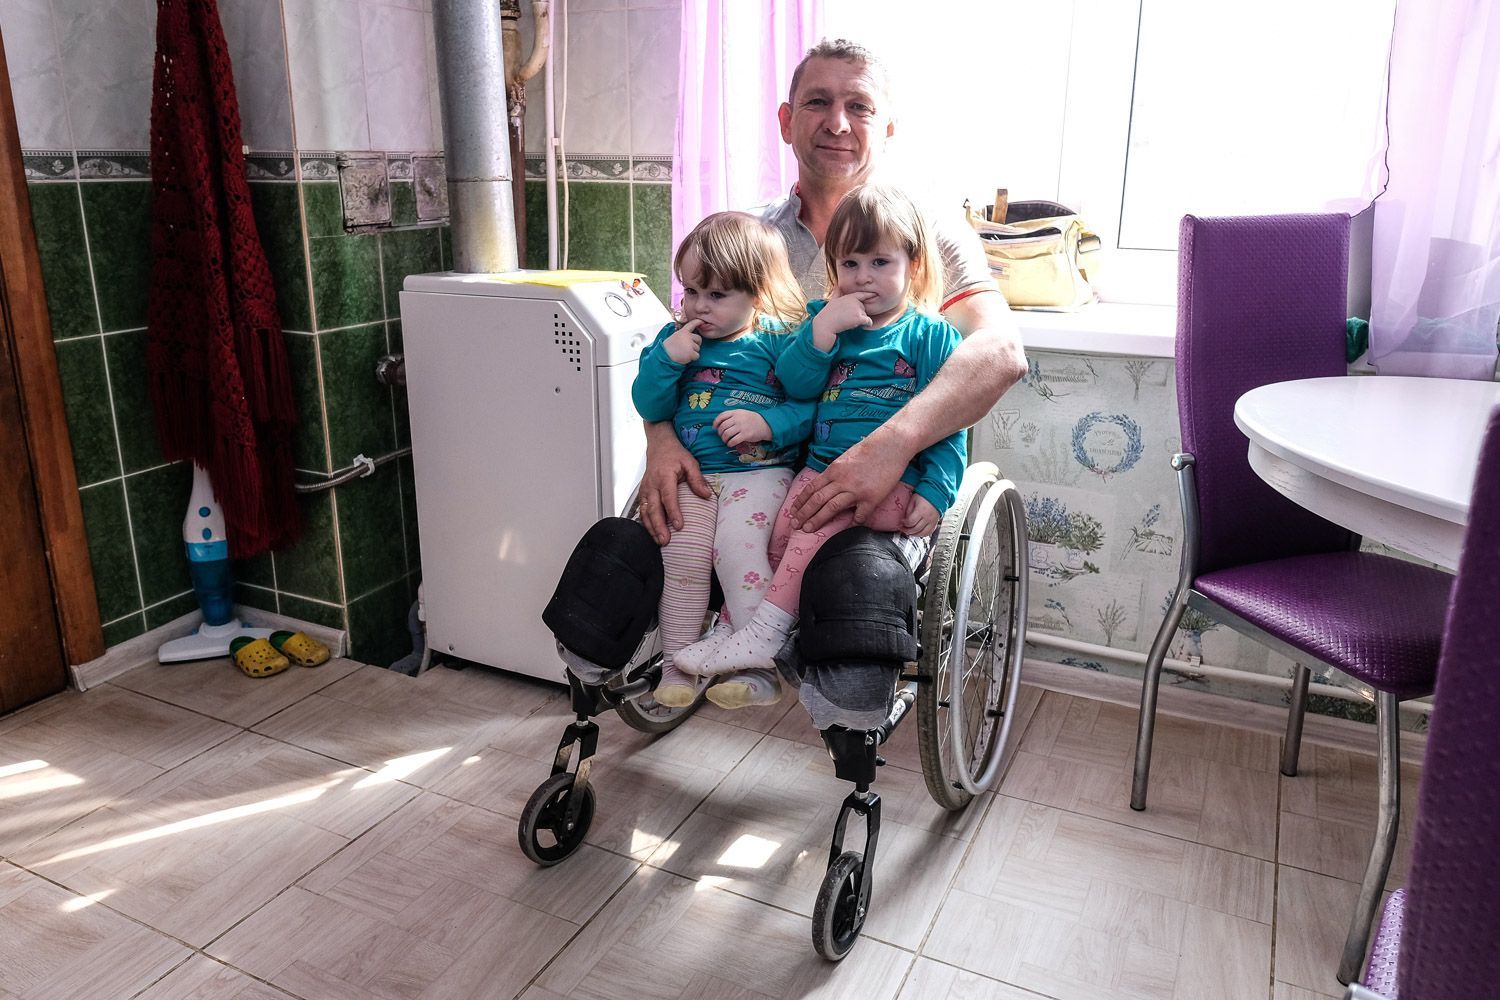 Дом инвалидов в краснодаре oldness ru. Девочка инвалид. Многодетные и инвалиды. Коляска платформа тележка для безногих инвалидов. Коляска-платформа для высоких ампутантов.